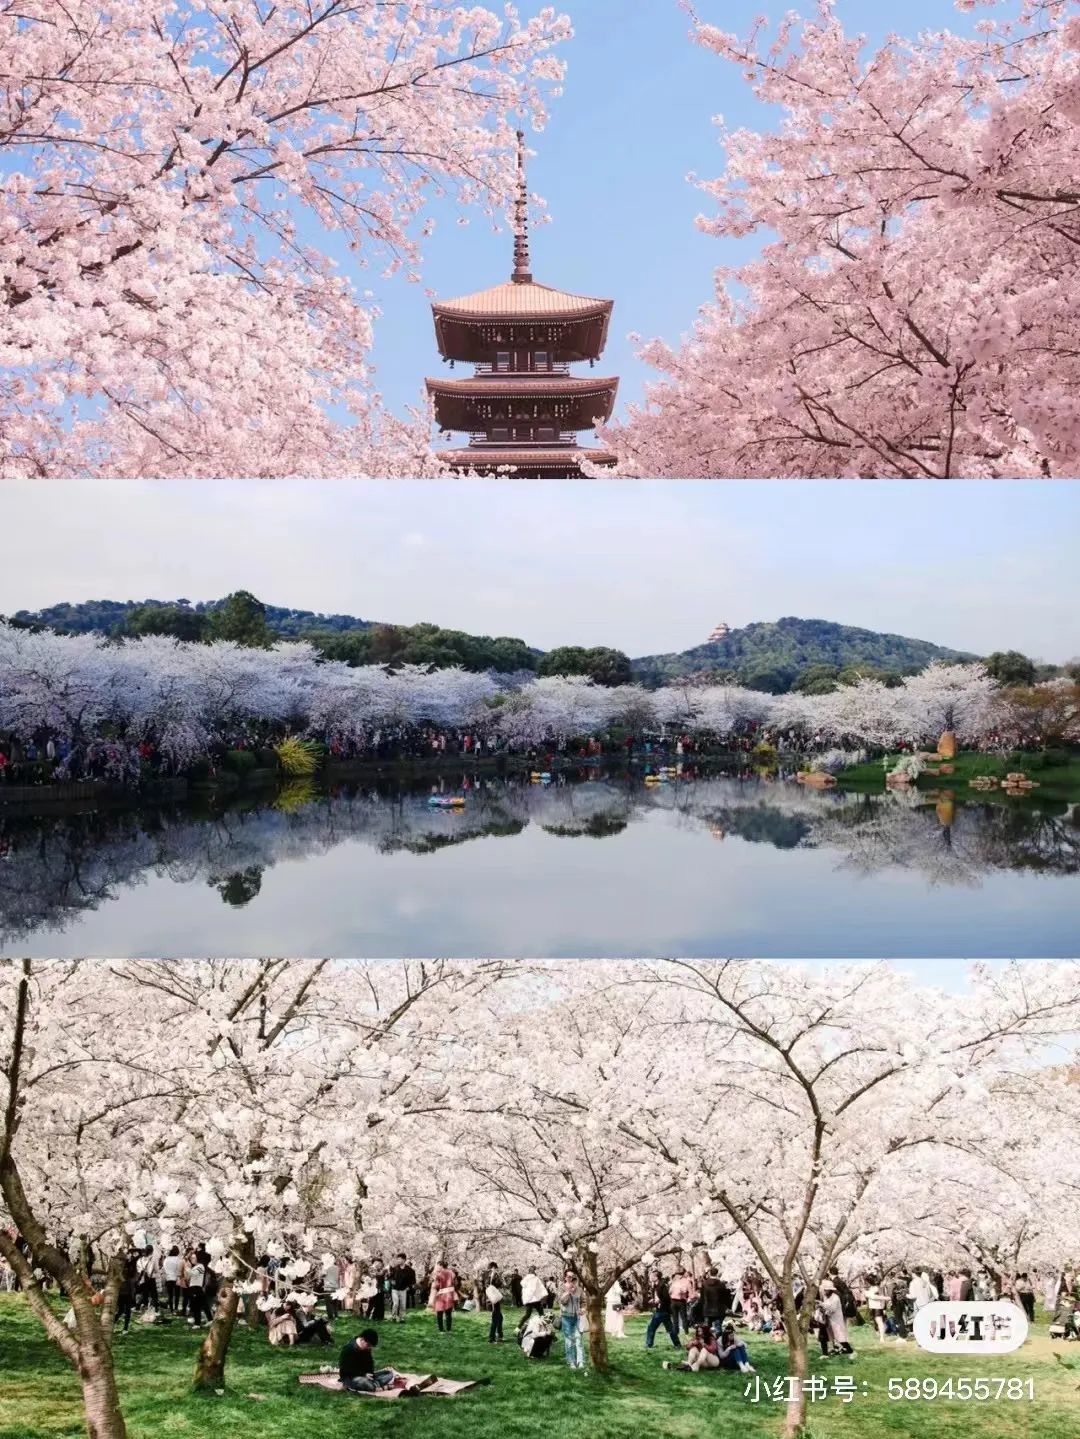 《【摩登平台手机版登陆】第三年了 我还是没能去武汉看樱花》